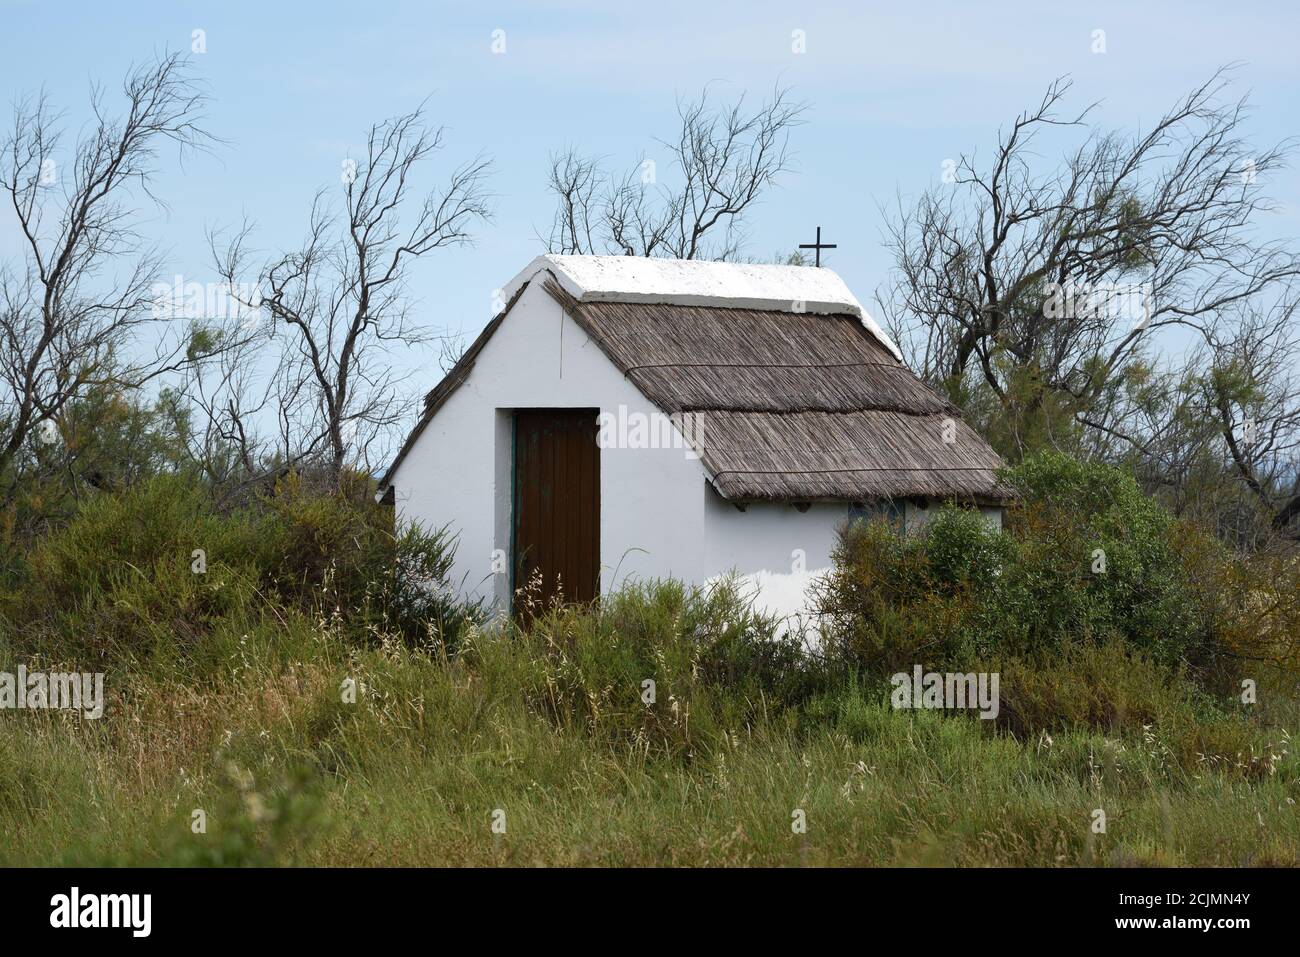 Traditionelle reetgedeckte Hütte bekannt als Guardian's Cabanon in der Camargue Region der Provence Frankreich Stockfoto